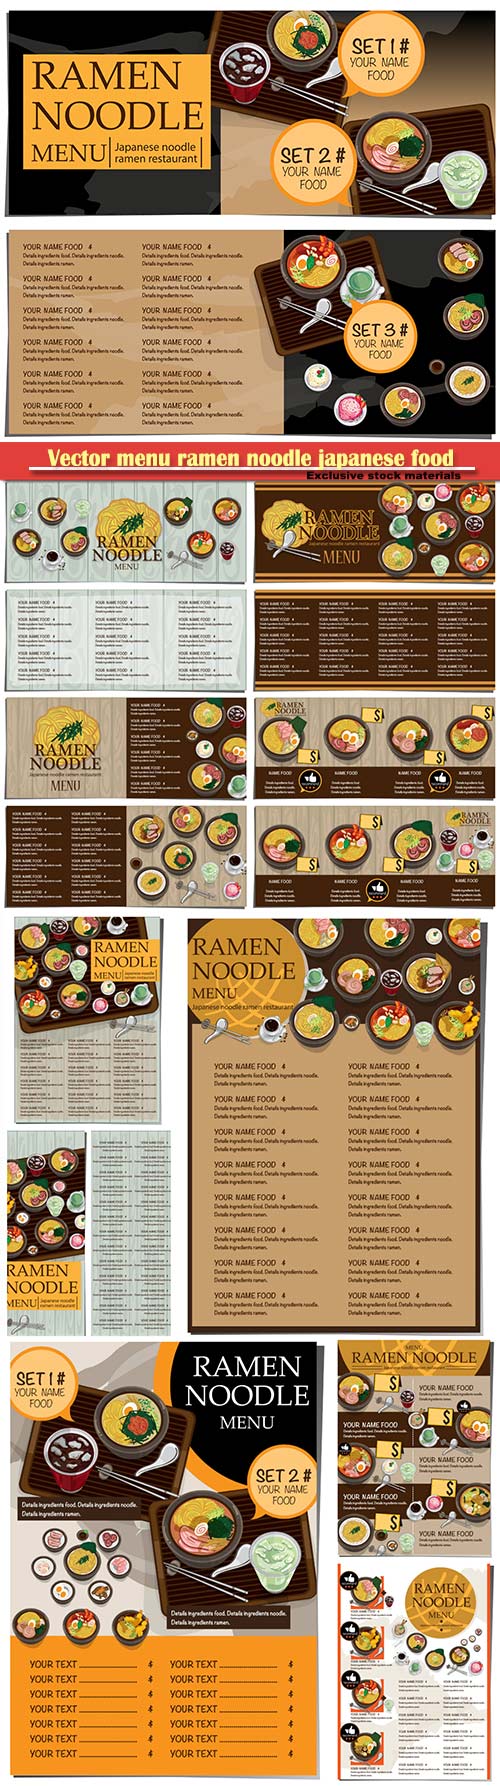 Vector menu ramen noodle japanese food template design